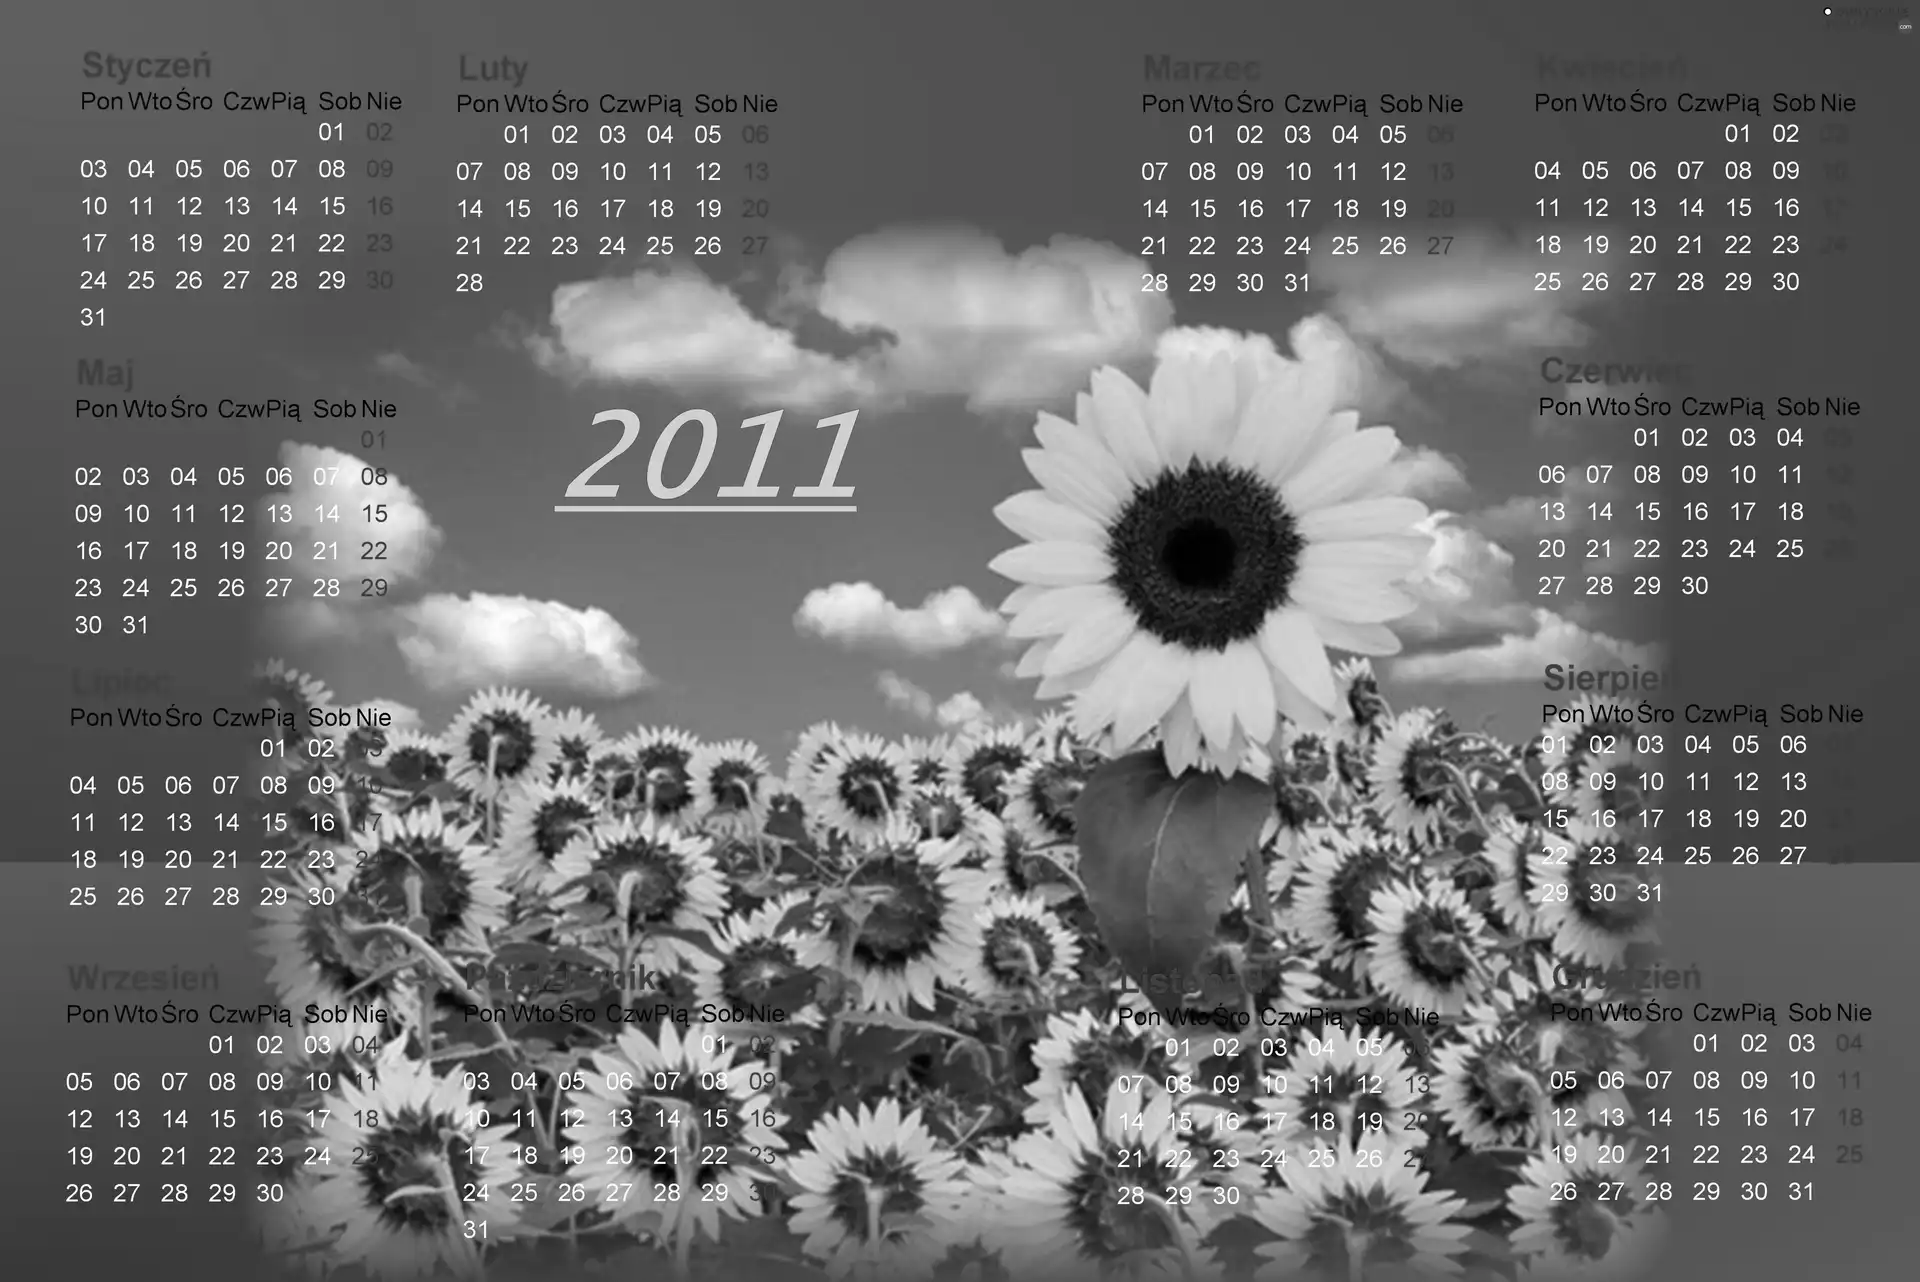 Sunflower, Calendar 2011